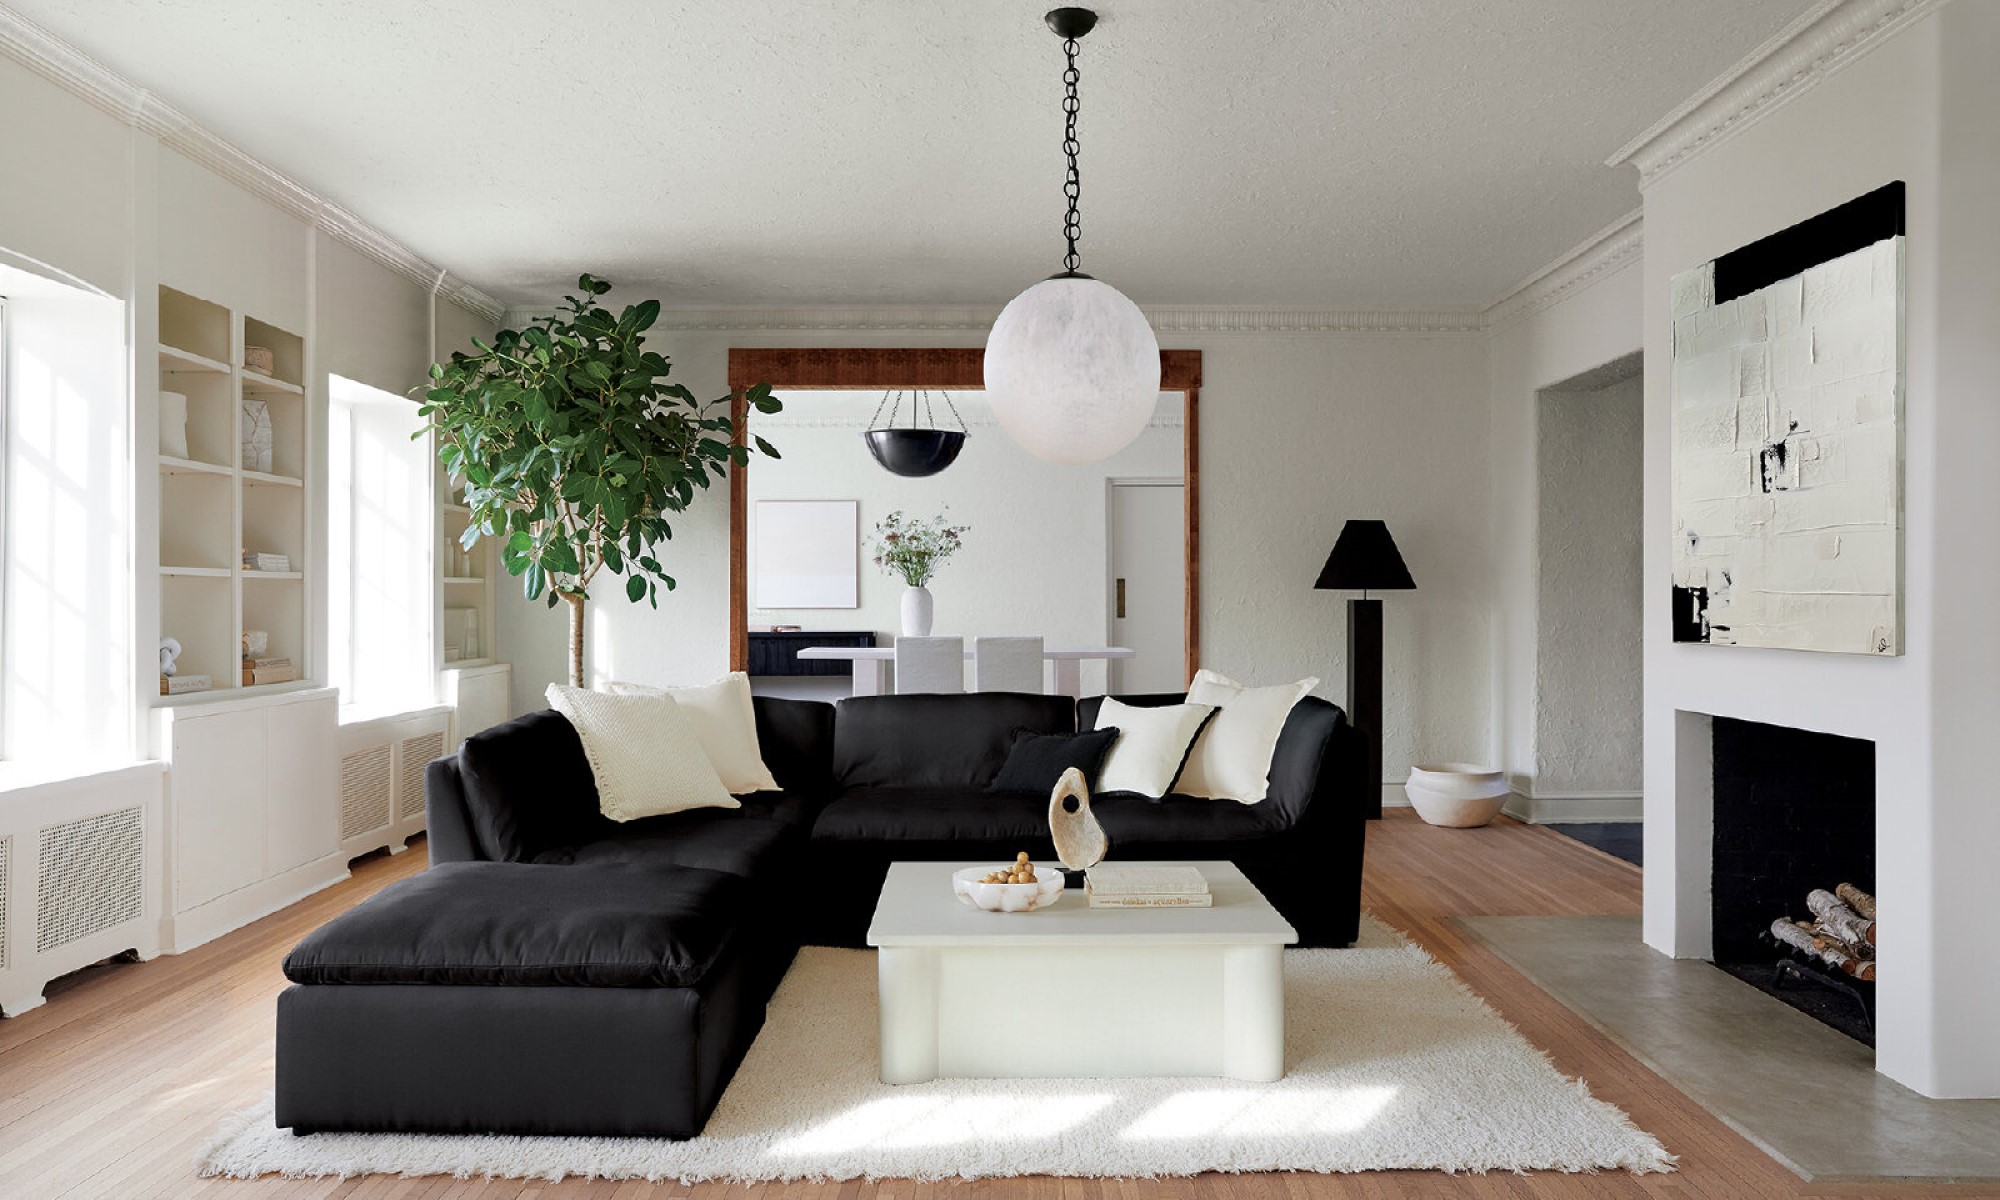 Живая классика: мебель с сочетанием черного и белого цветов